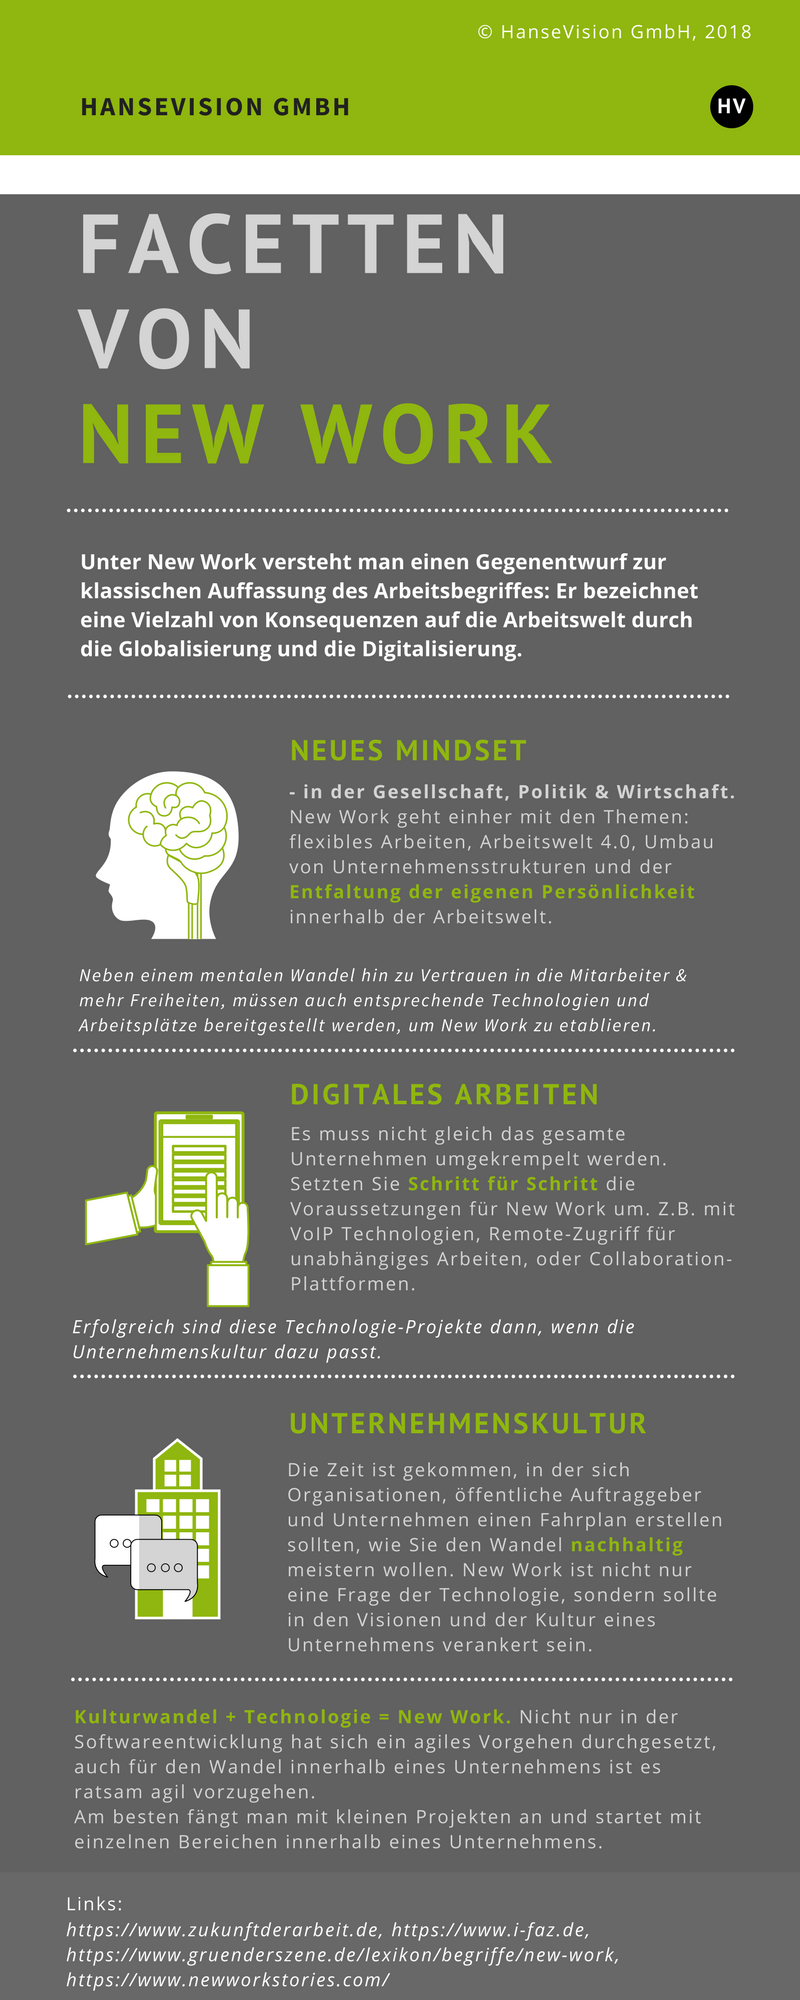 New Work - Infografik: Zusammenhang Digitalisierung und Kultur